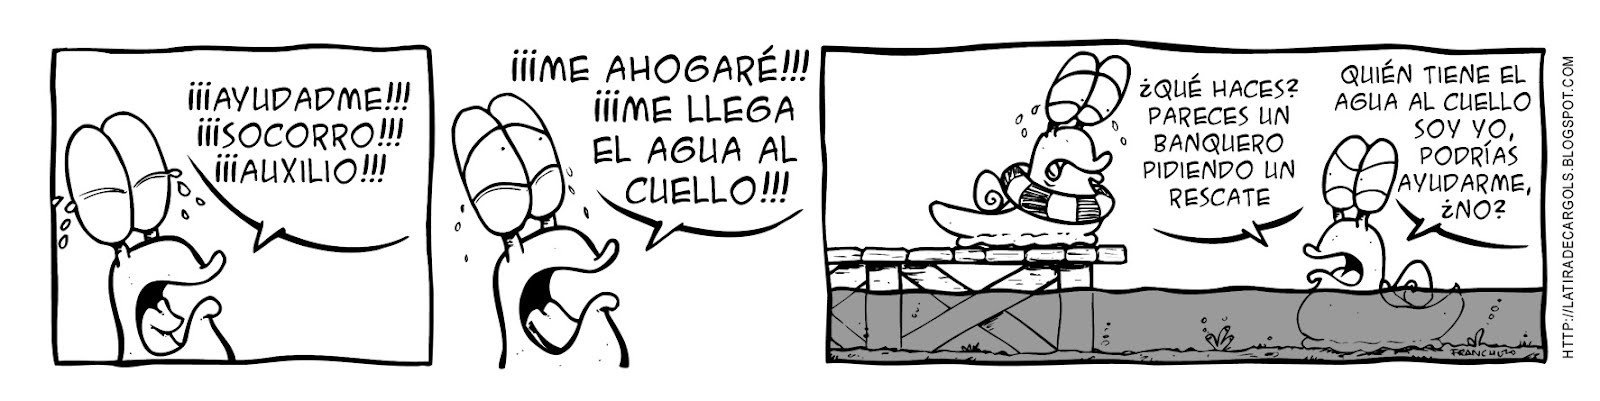 Tira comica 127 del webcomic Cargols del dibujante Franchu de Barcelona